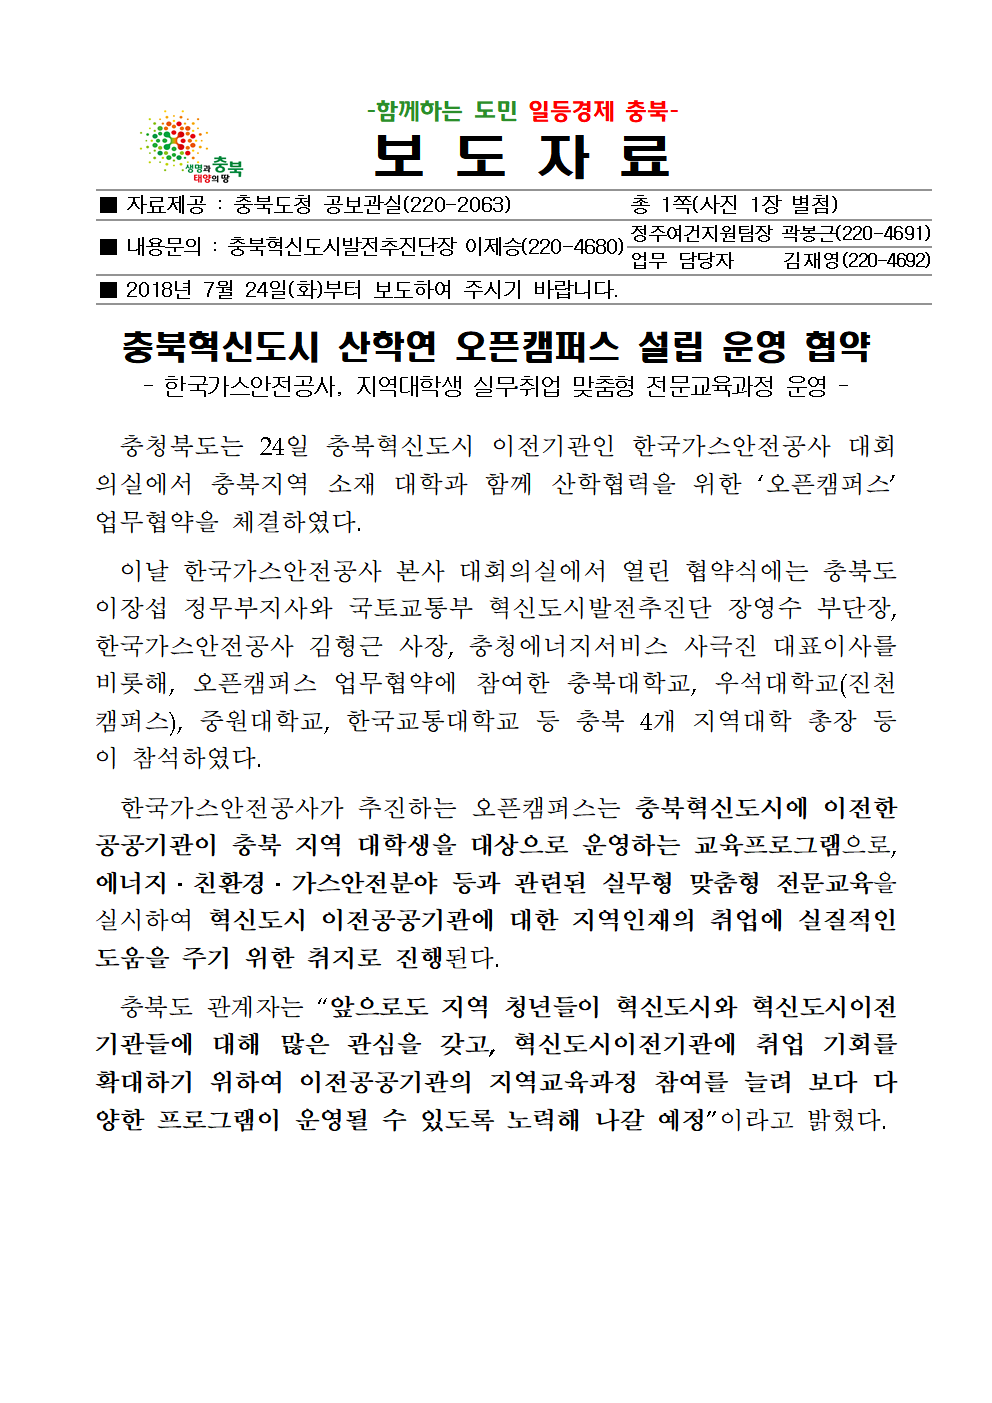 충북혁신도시 산학연 오픈캠퍼스 설립 운영 협약001.png